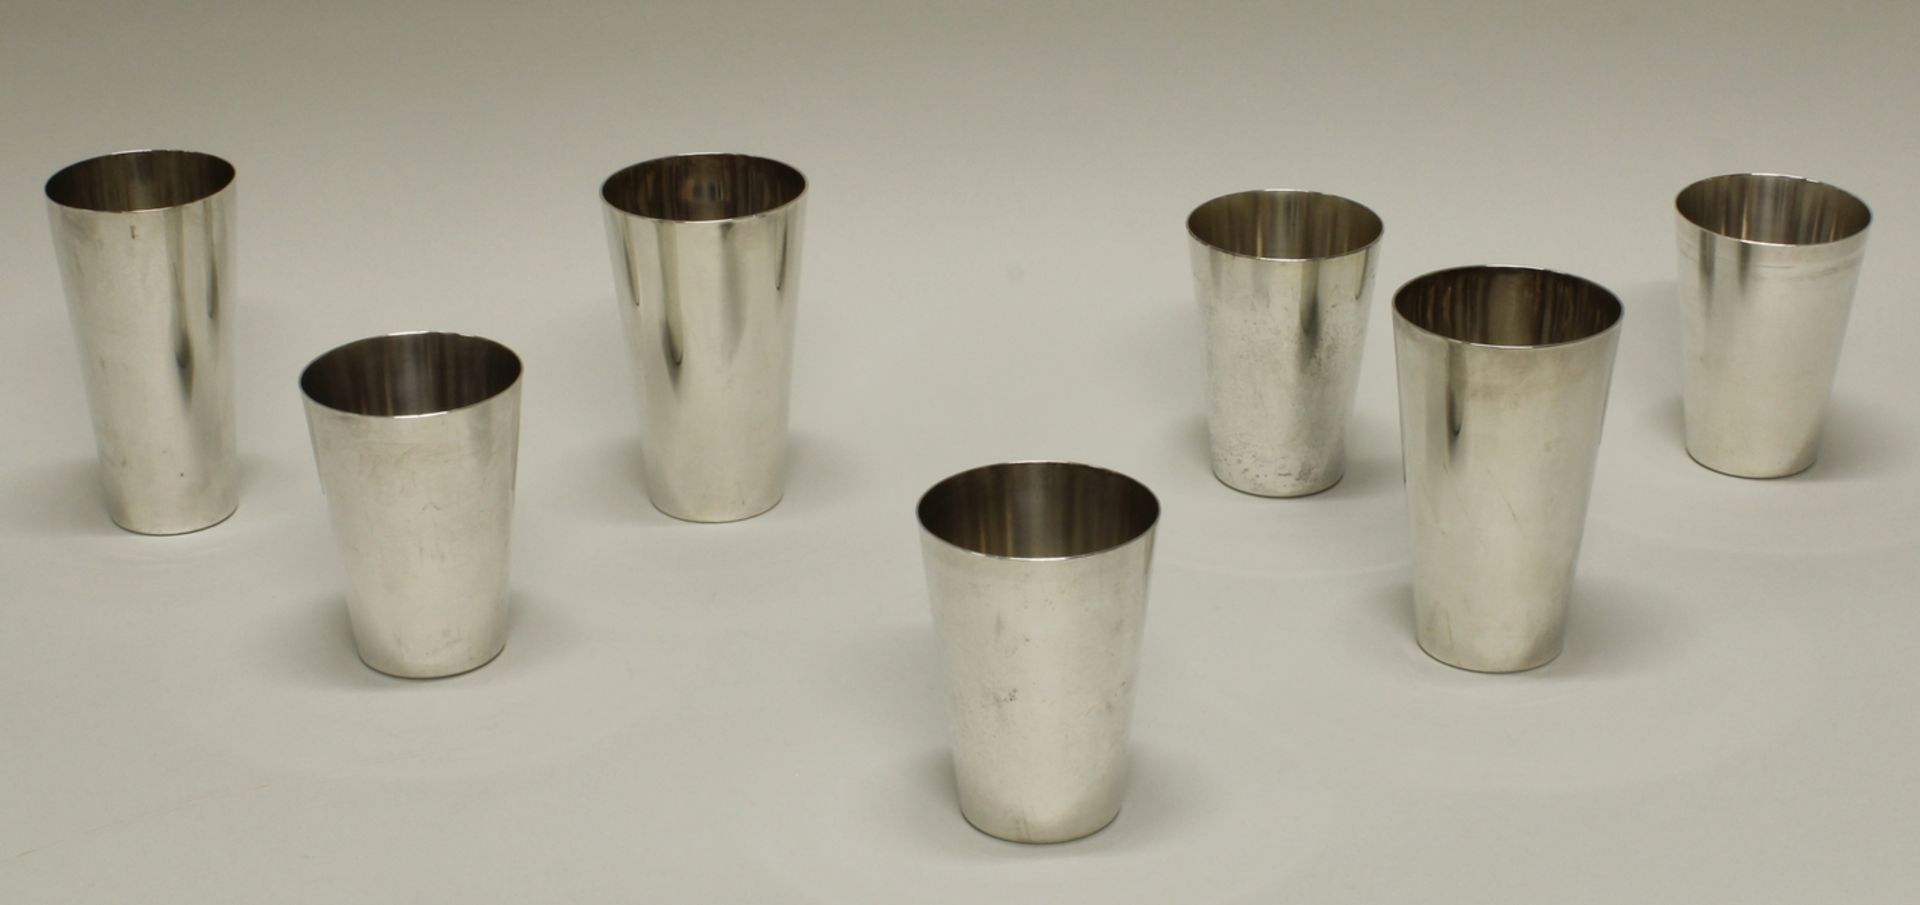 3 Becher, Silber 800/835, deutsch, konisch, glatt, verschieden, 1x mit Gravur 12.8-13.5 cm hoch, zu